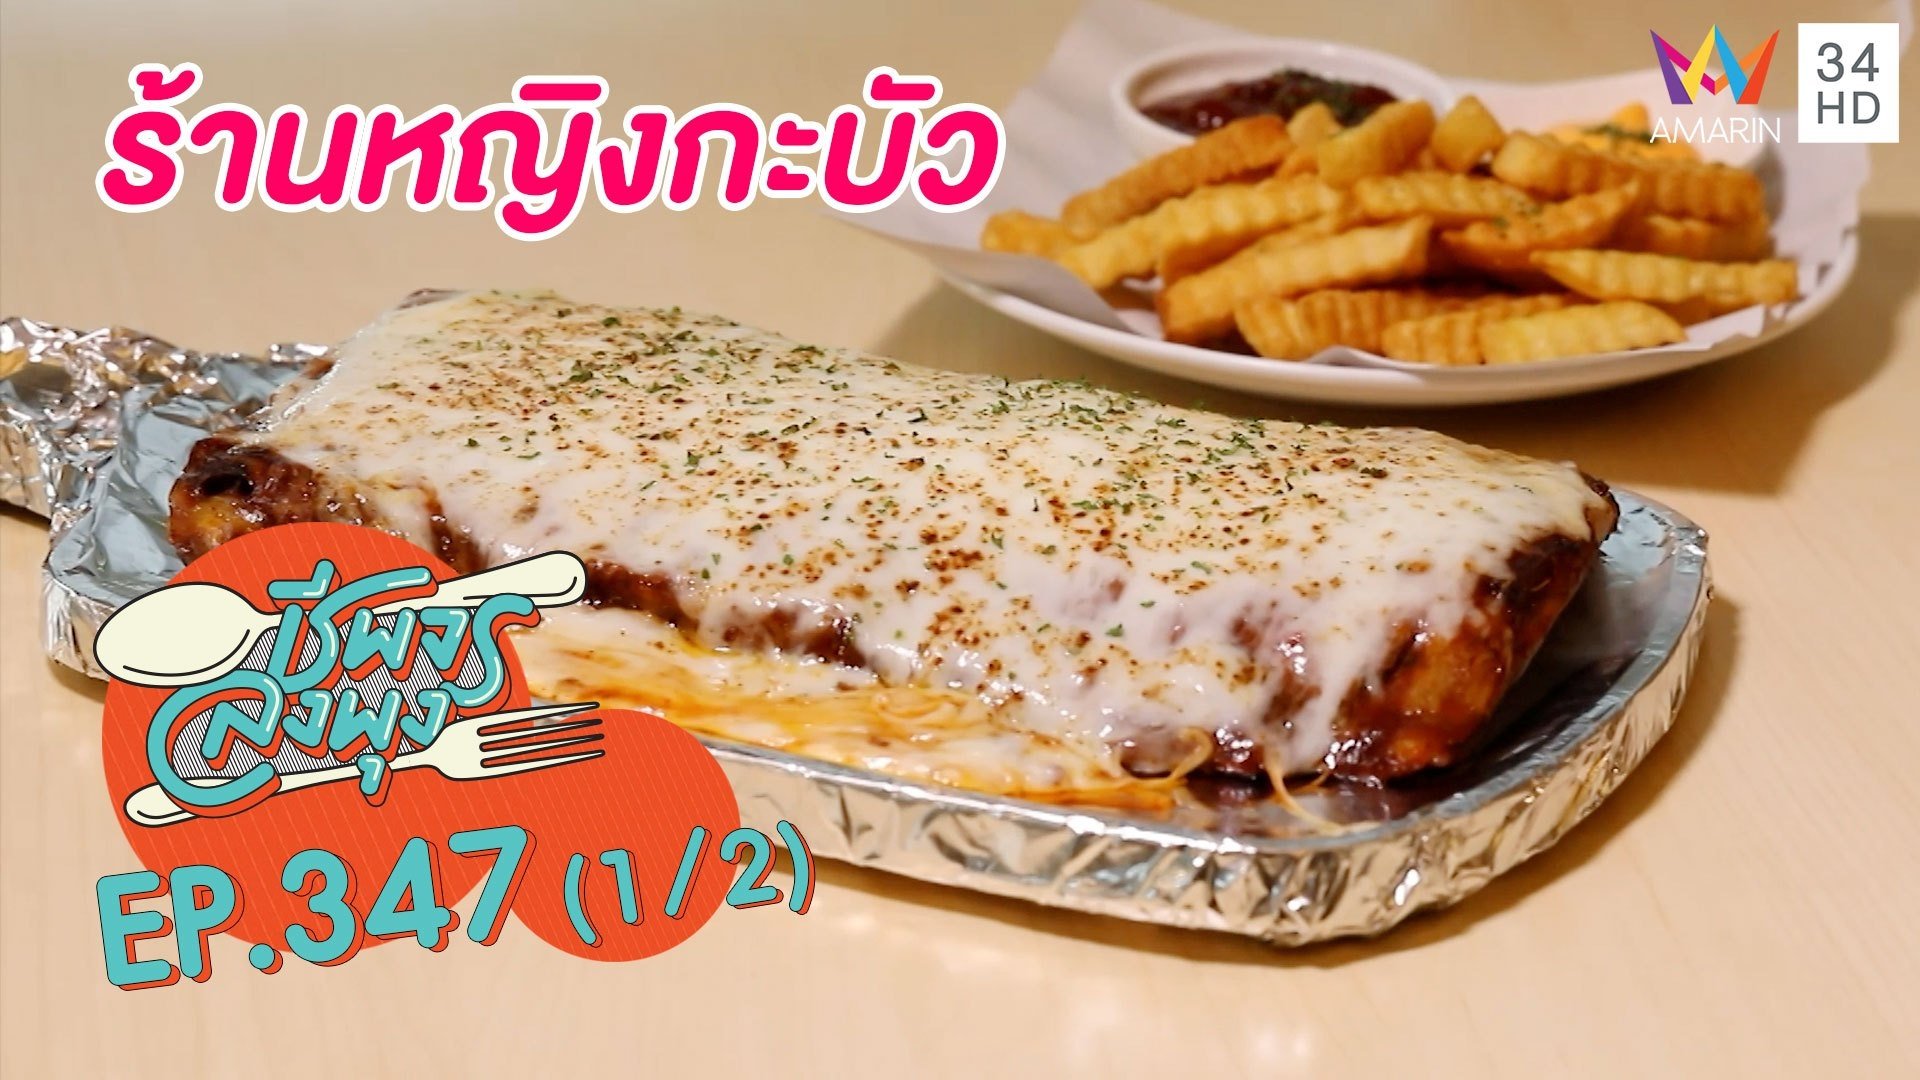 อาหารไทยฟิวชันแนวครอบครัว @ร้านหญิงกะบัว | ชีพจรลงพุง | 4 ธ.ค. 64 (1/2) | AMARIN TVHD34